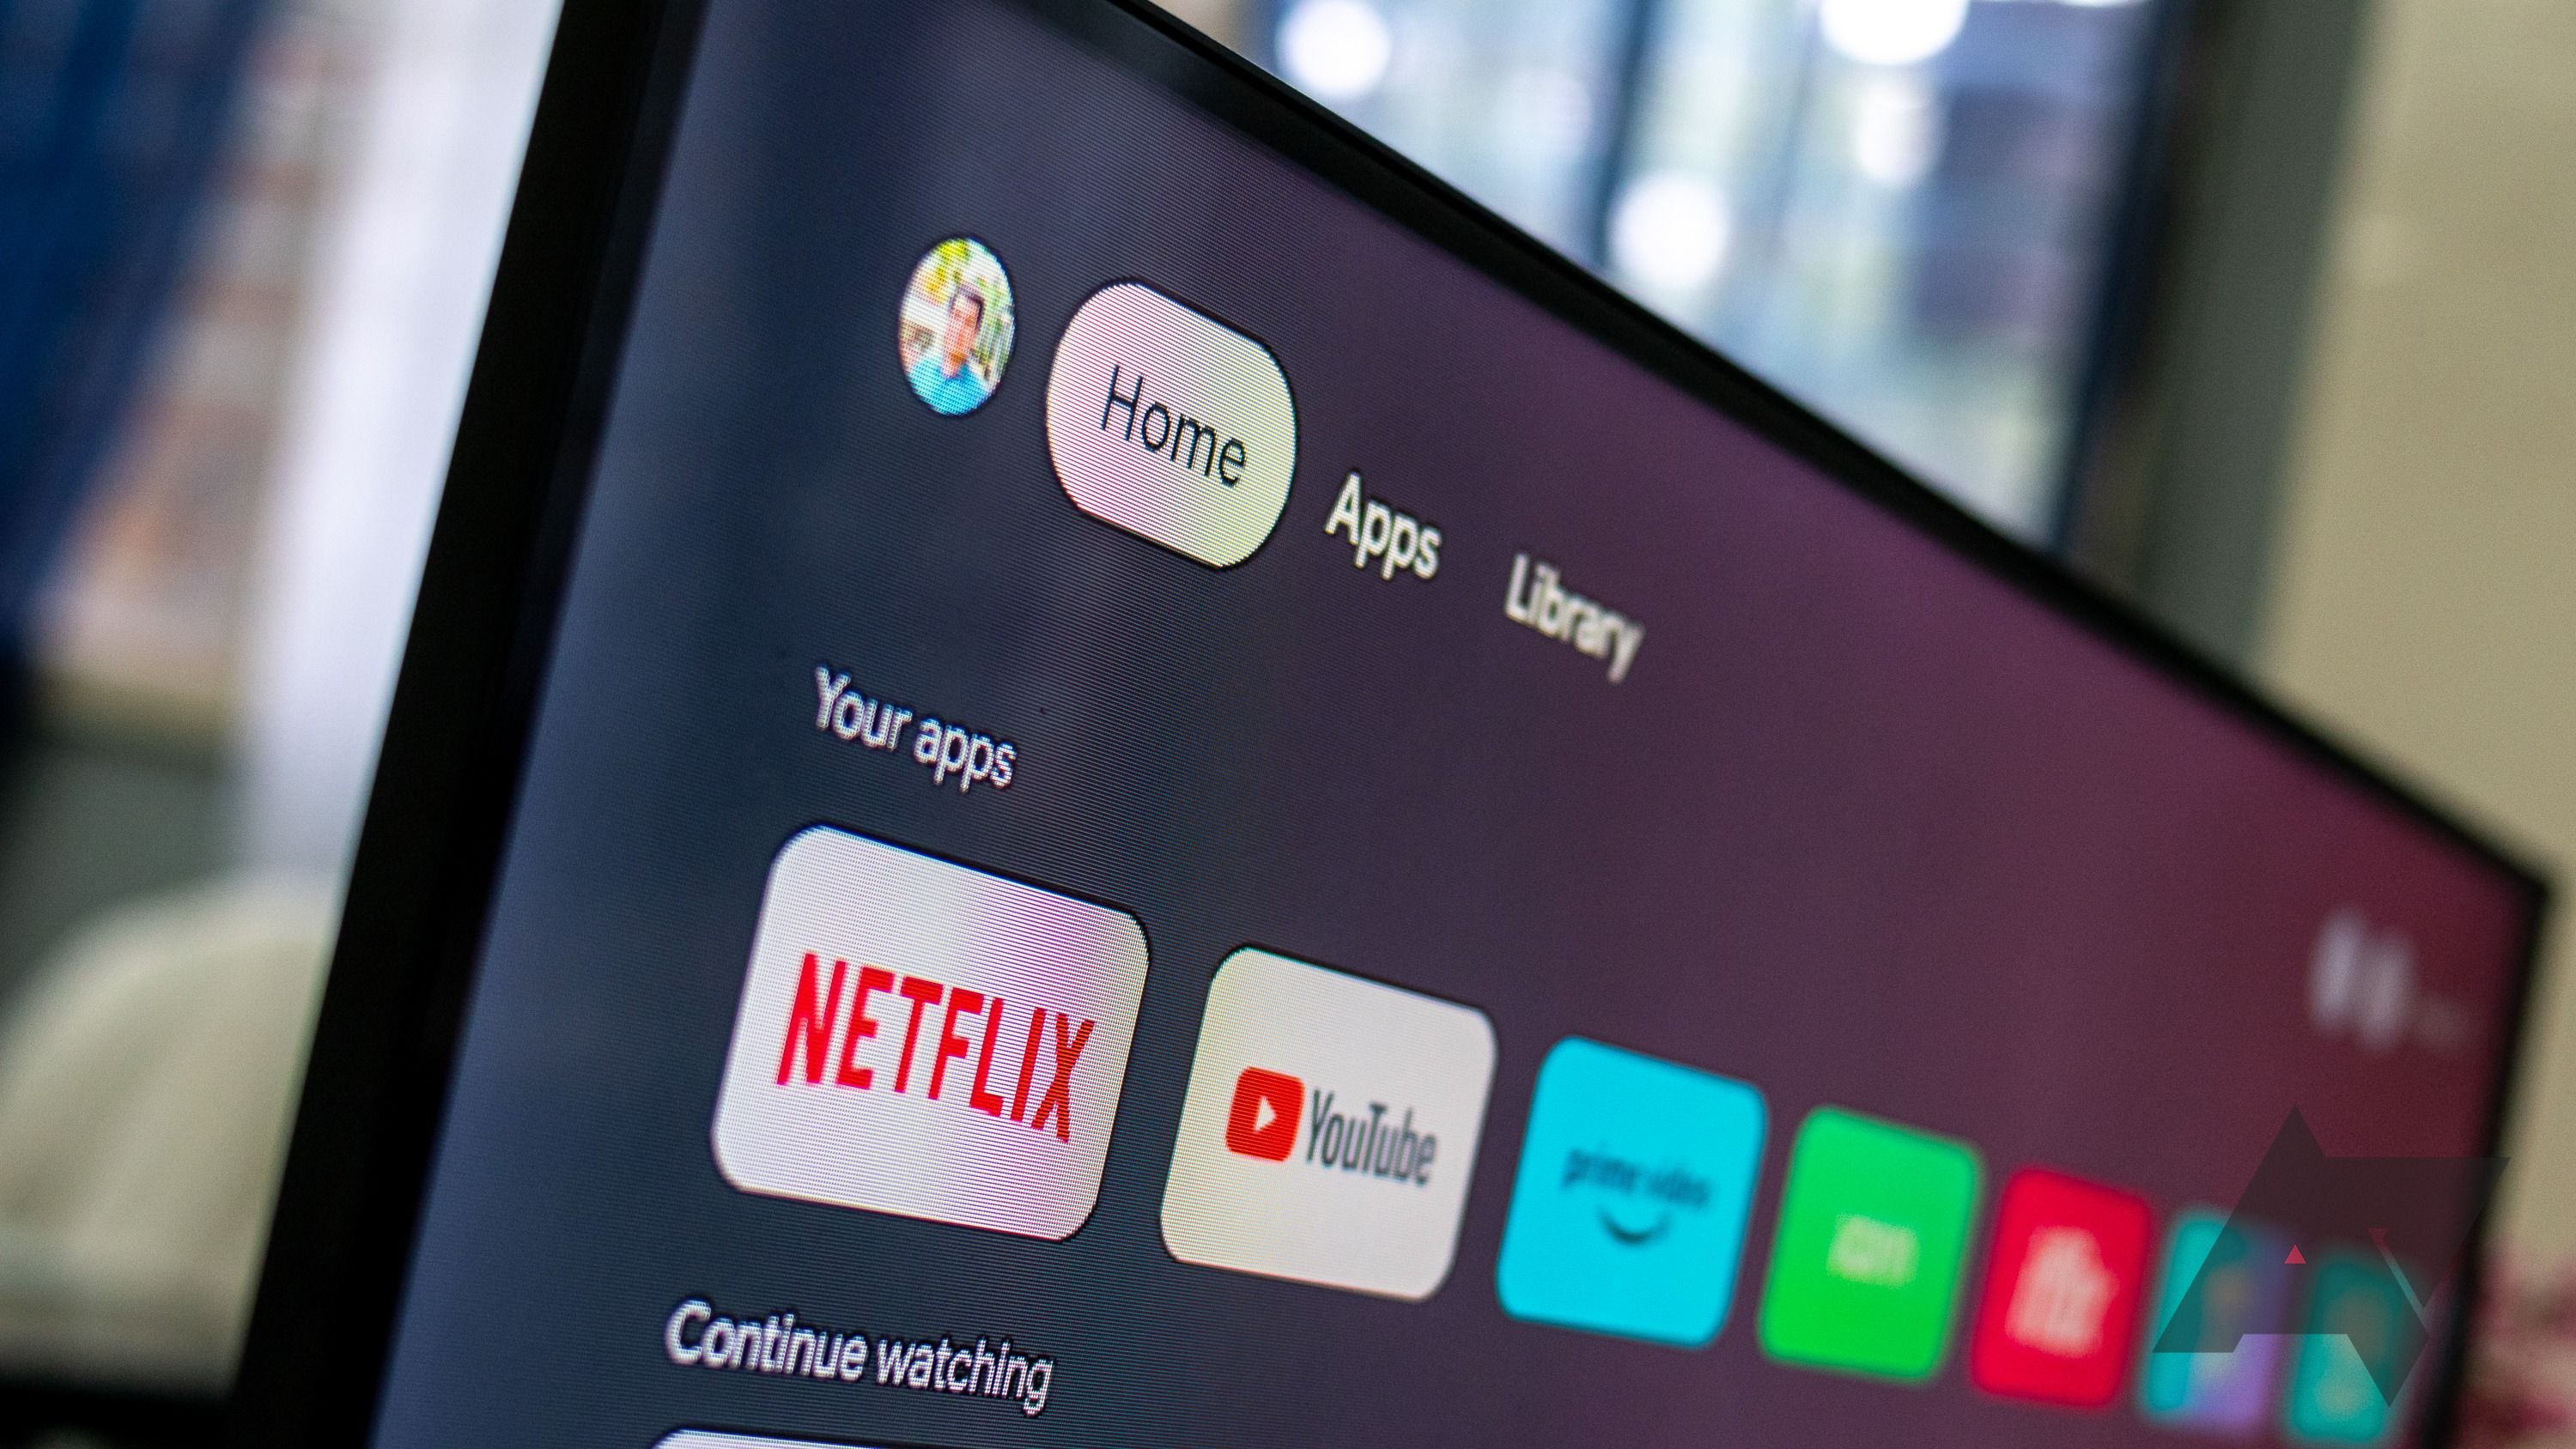 Guia inicial da Android TV mostrando Netflix e outros aplicativos na tela